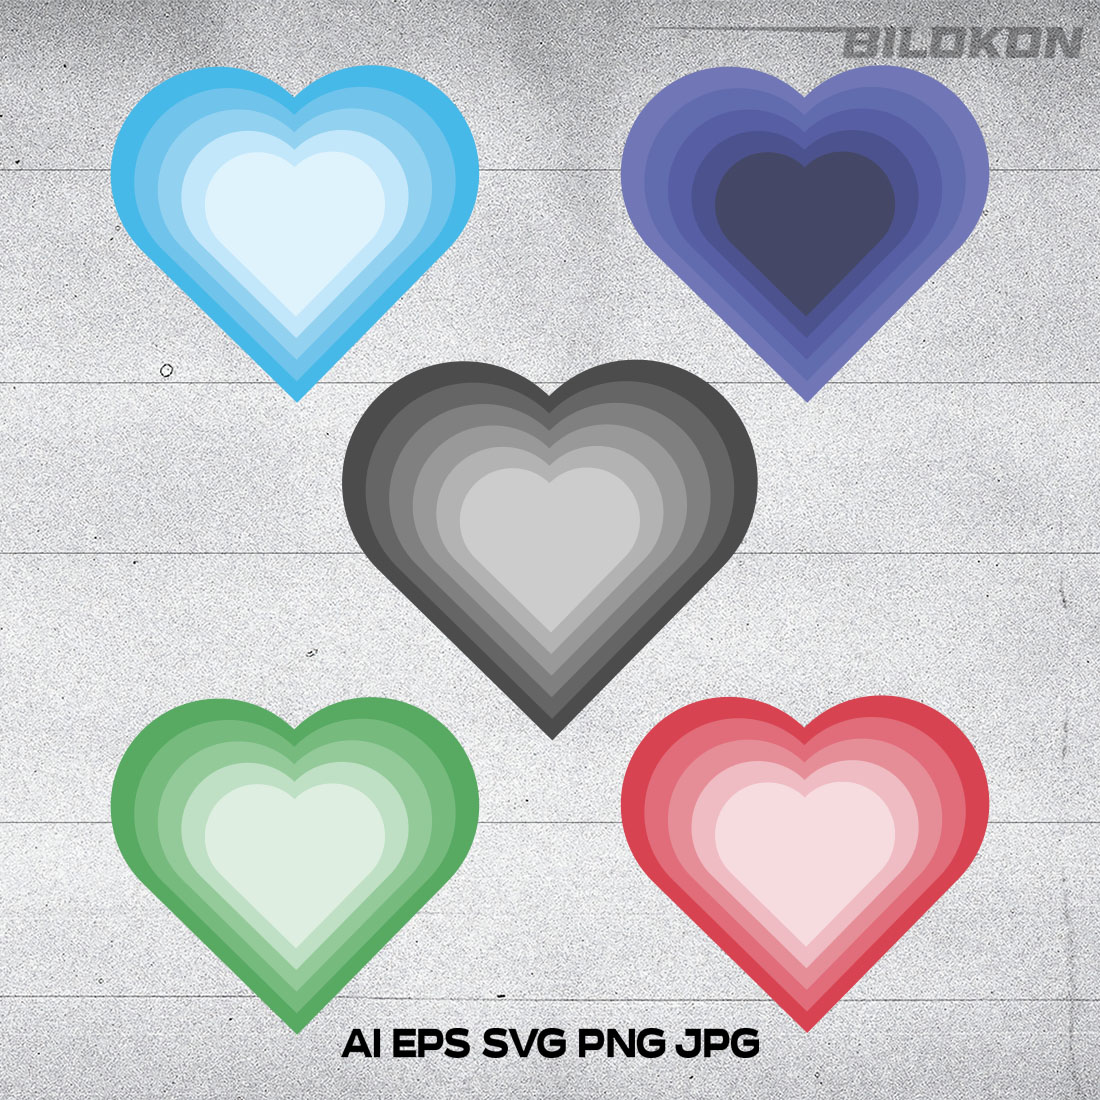 Multicolor Heart Set Icon main cover image.